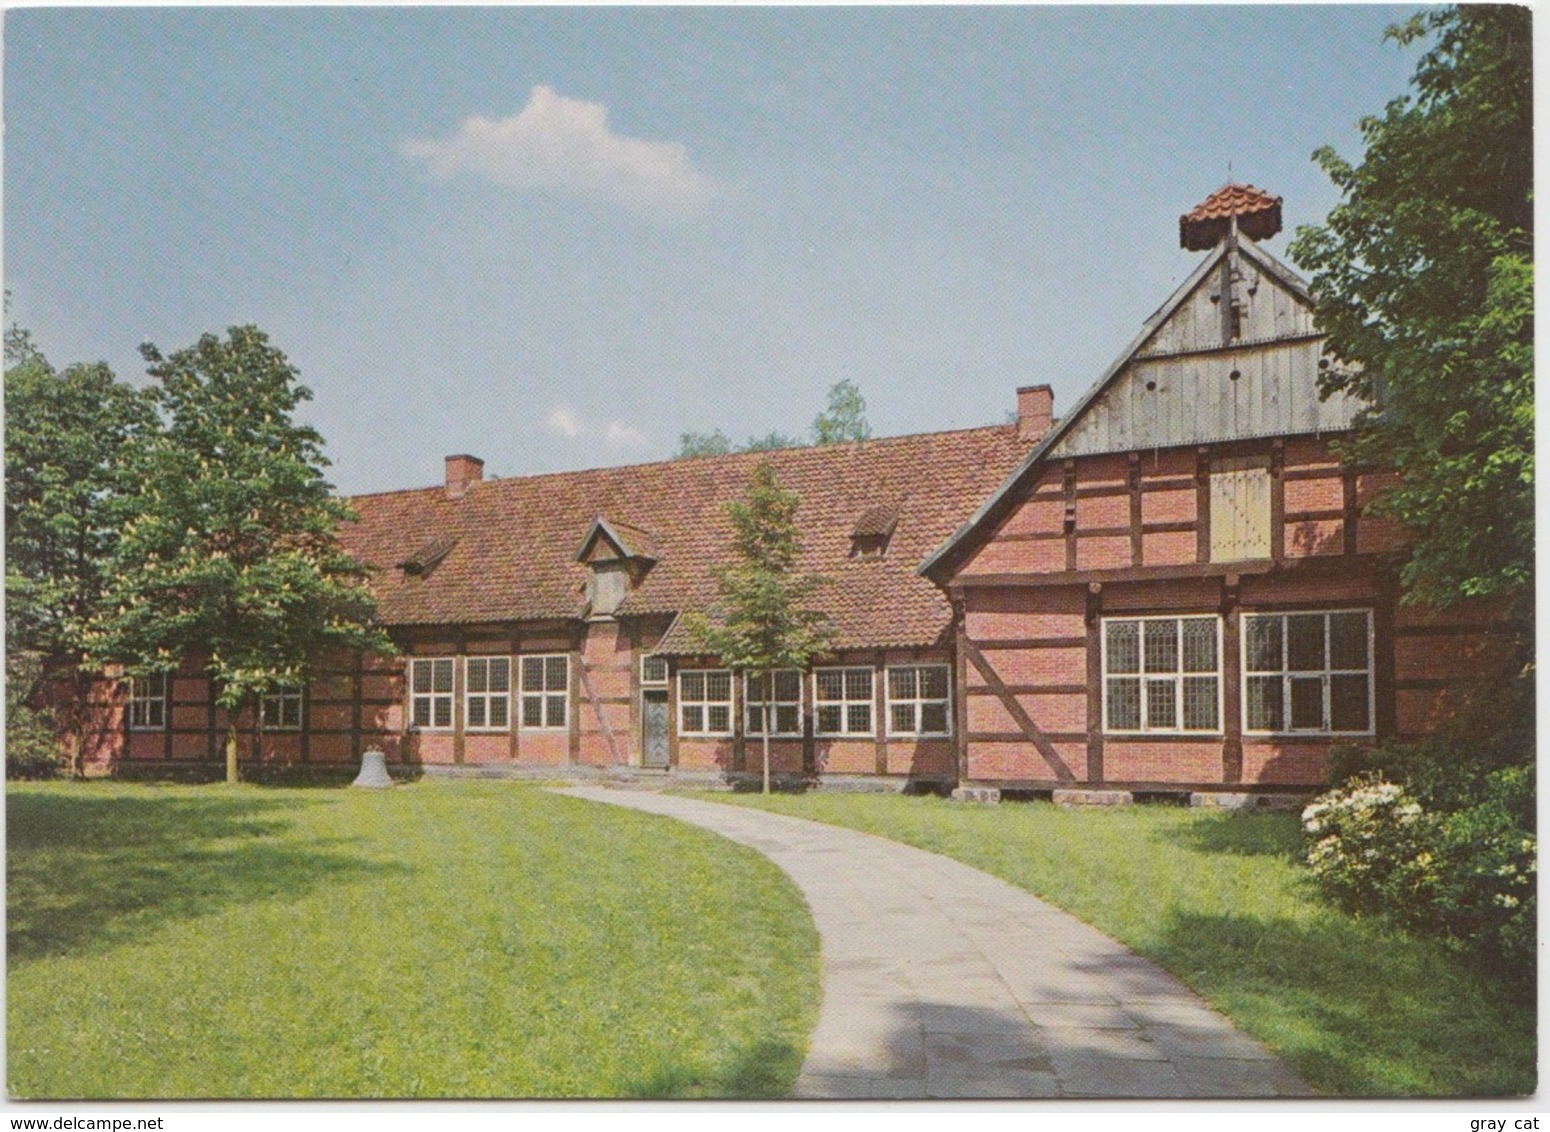 Herrenhaus "Burg Arkenstede" Museumsdorf, Cloppenburg, Niedersachsisches Freilichtmuseum  Unused Postcard [21403] - Cloppenburg